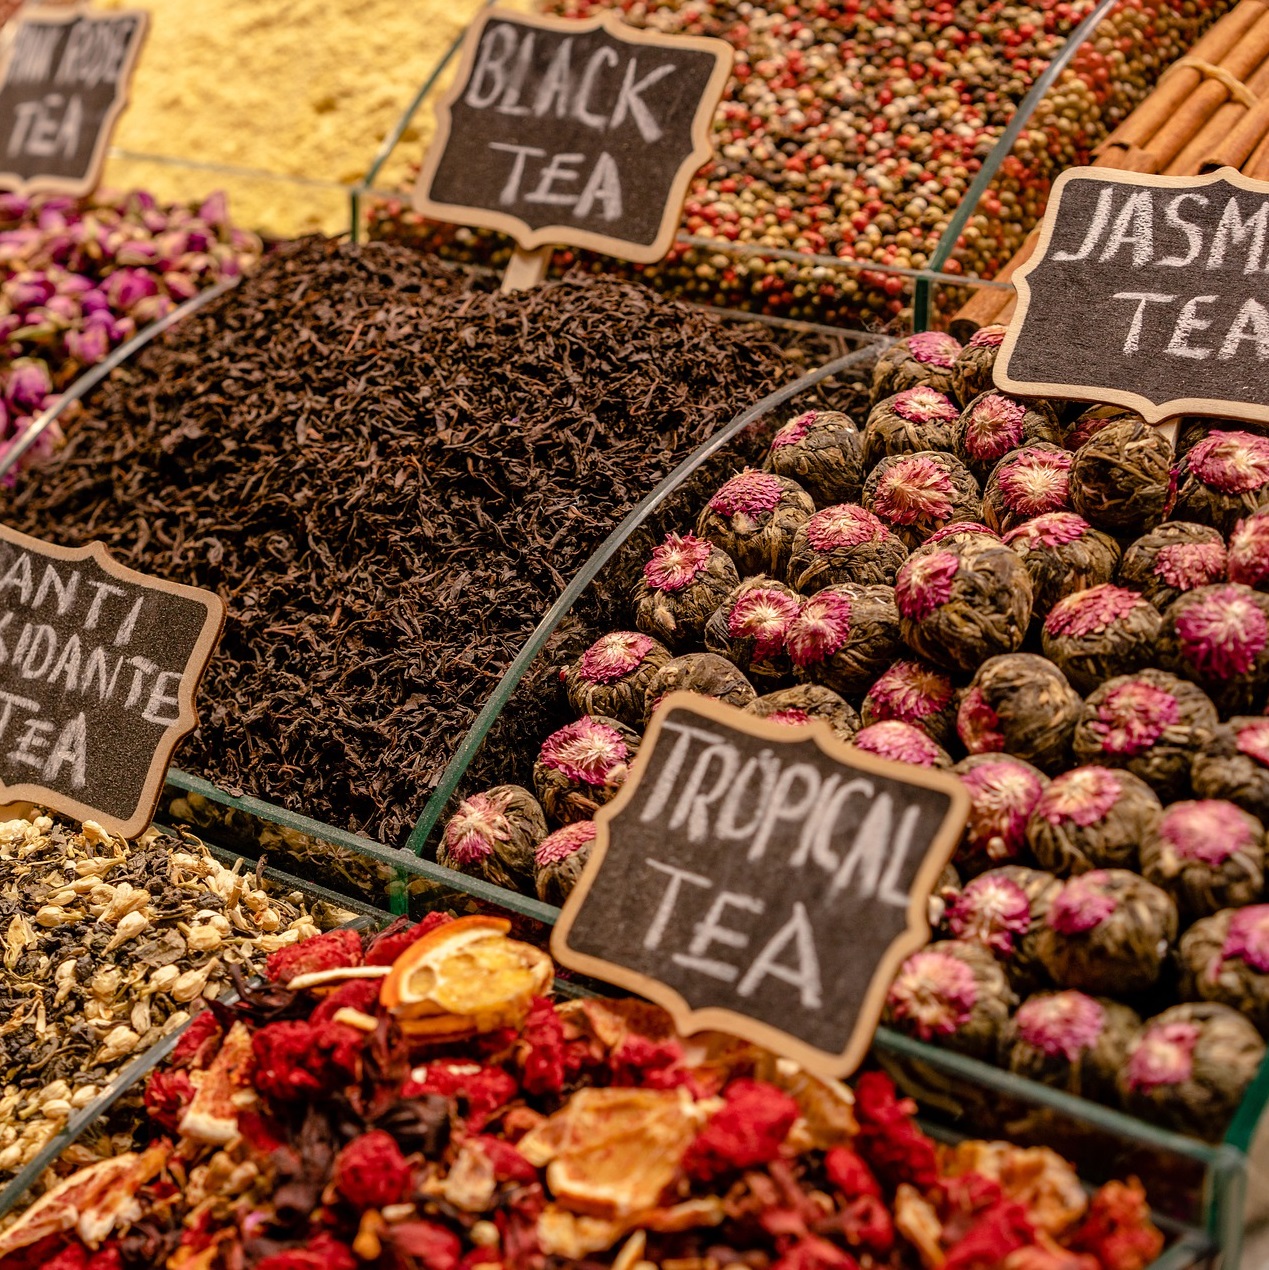 Thé et tisane sur les marchés montpellierrain